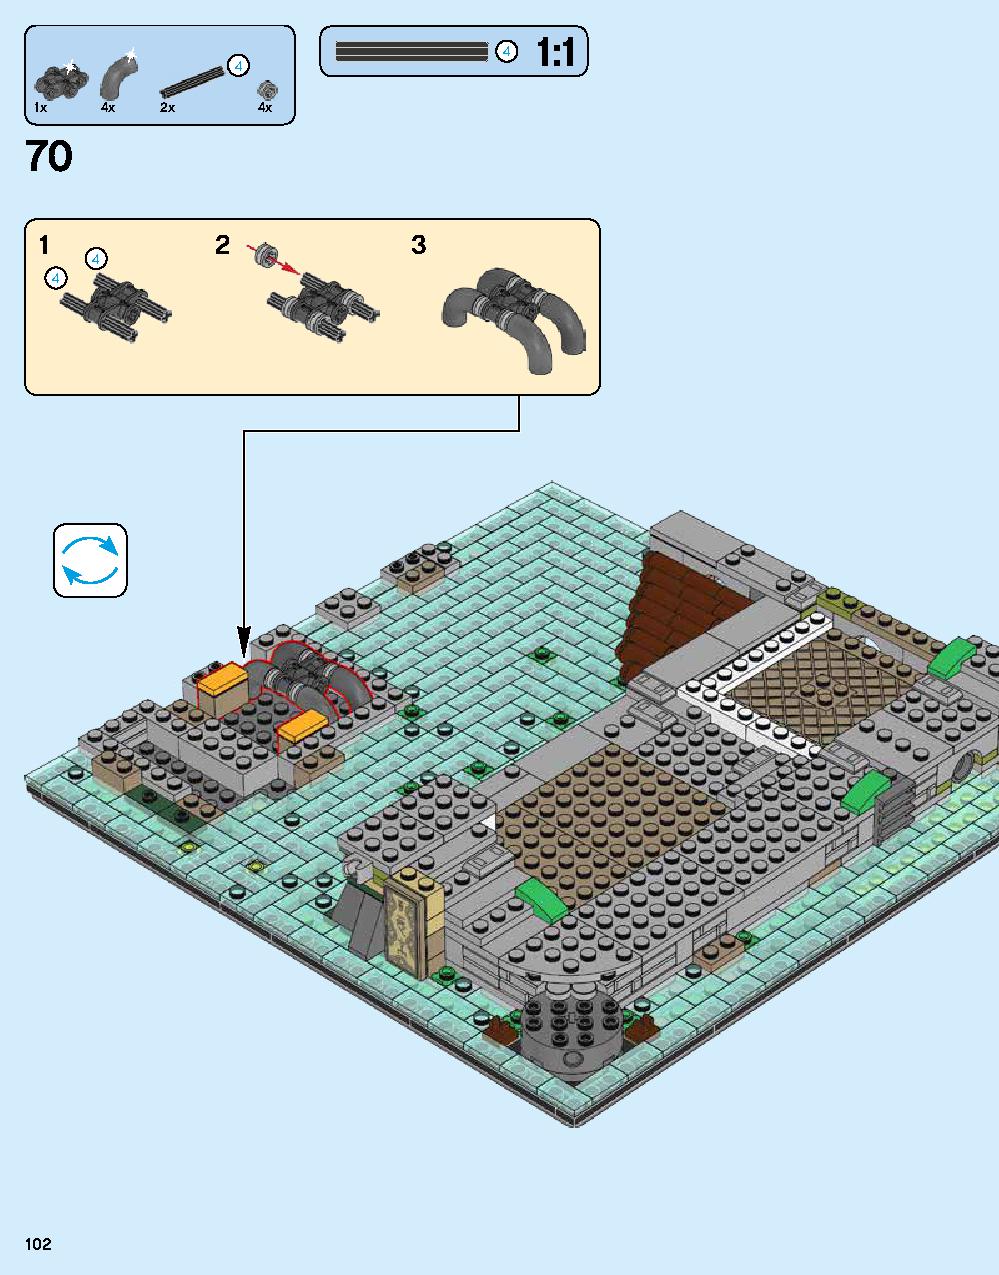 ニンジャゴー シティ 70620 レゴの商品情報 レゴの説明書・組立方法 102 page